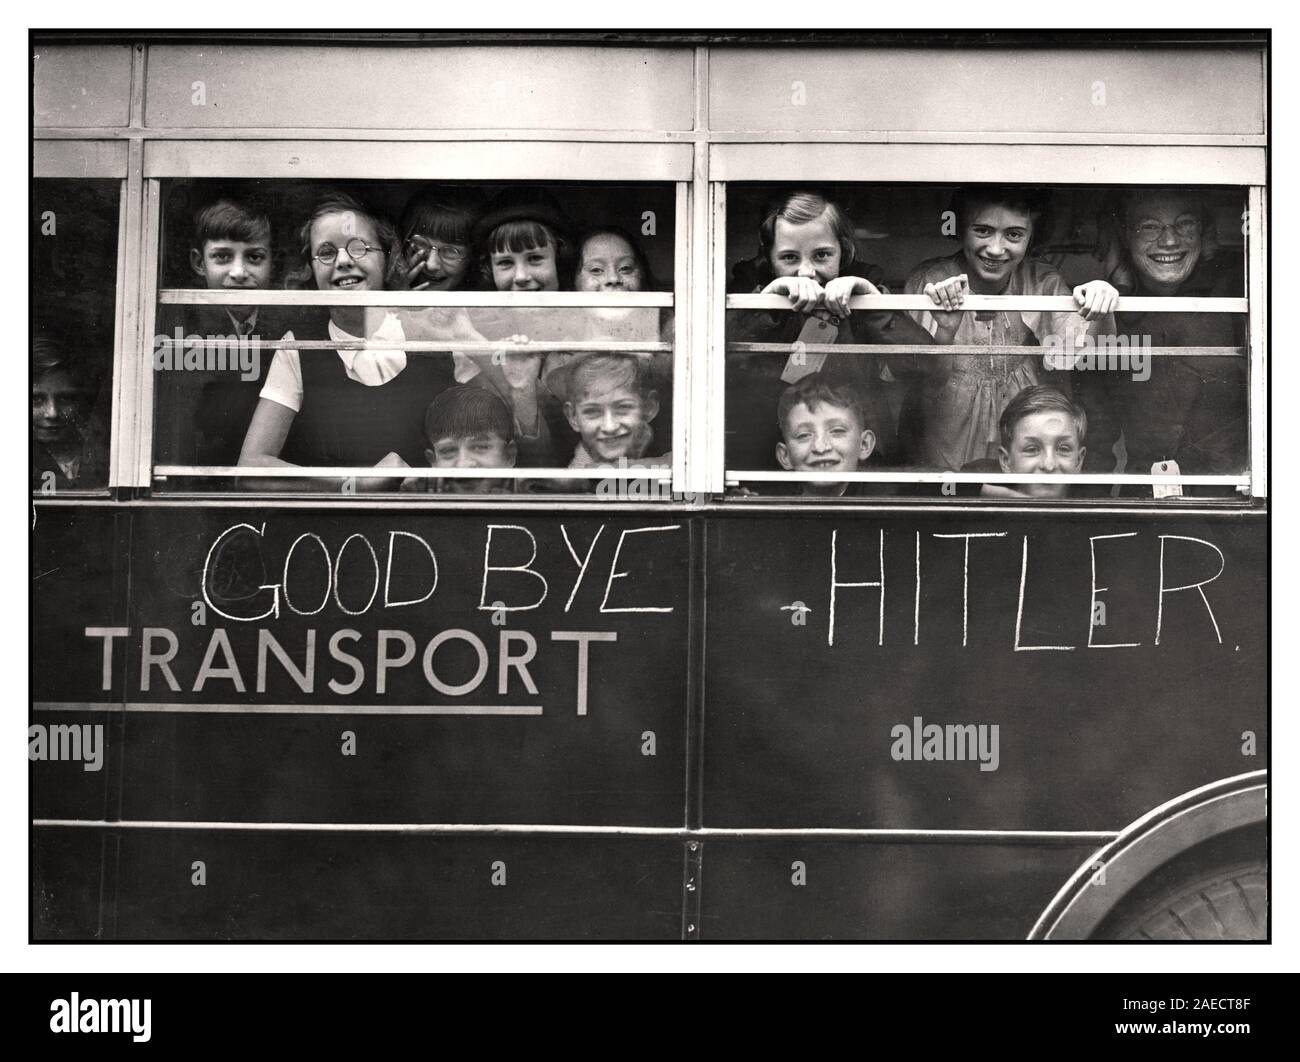 EVACUATION JEUNES ÉVACUÉS WW2 enfants du quartier est de Londres 'Goodbye Hitler' évacuant au début de la deuxième Guerre mondiale de WW2 image d'enfants britanniques souriants évacués dans un bus de transport de Londres en dehors de l'Allemagne nazie Blitz bombardement, dans le cadre de l'opération pied Piper. En fin de compte, 3,5 millions de personnes ont été déplacées dans le cadre de l'évacuation de la Seconde Guerre mondiale. Deuxième Guerre mondiale Banque D'Images